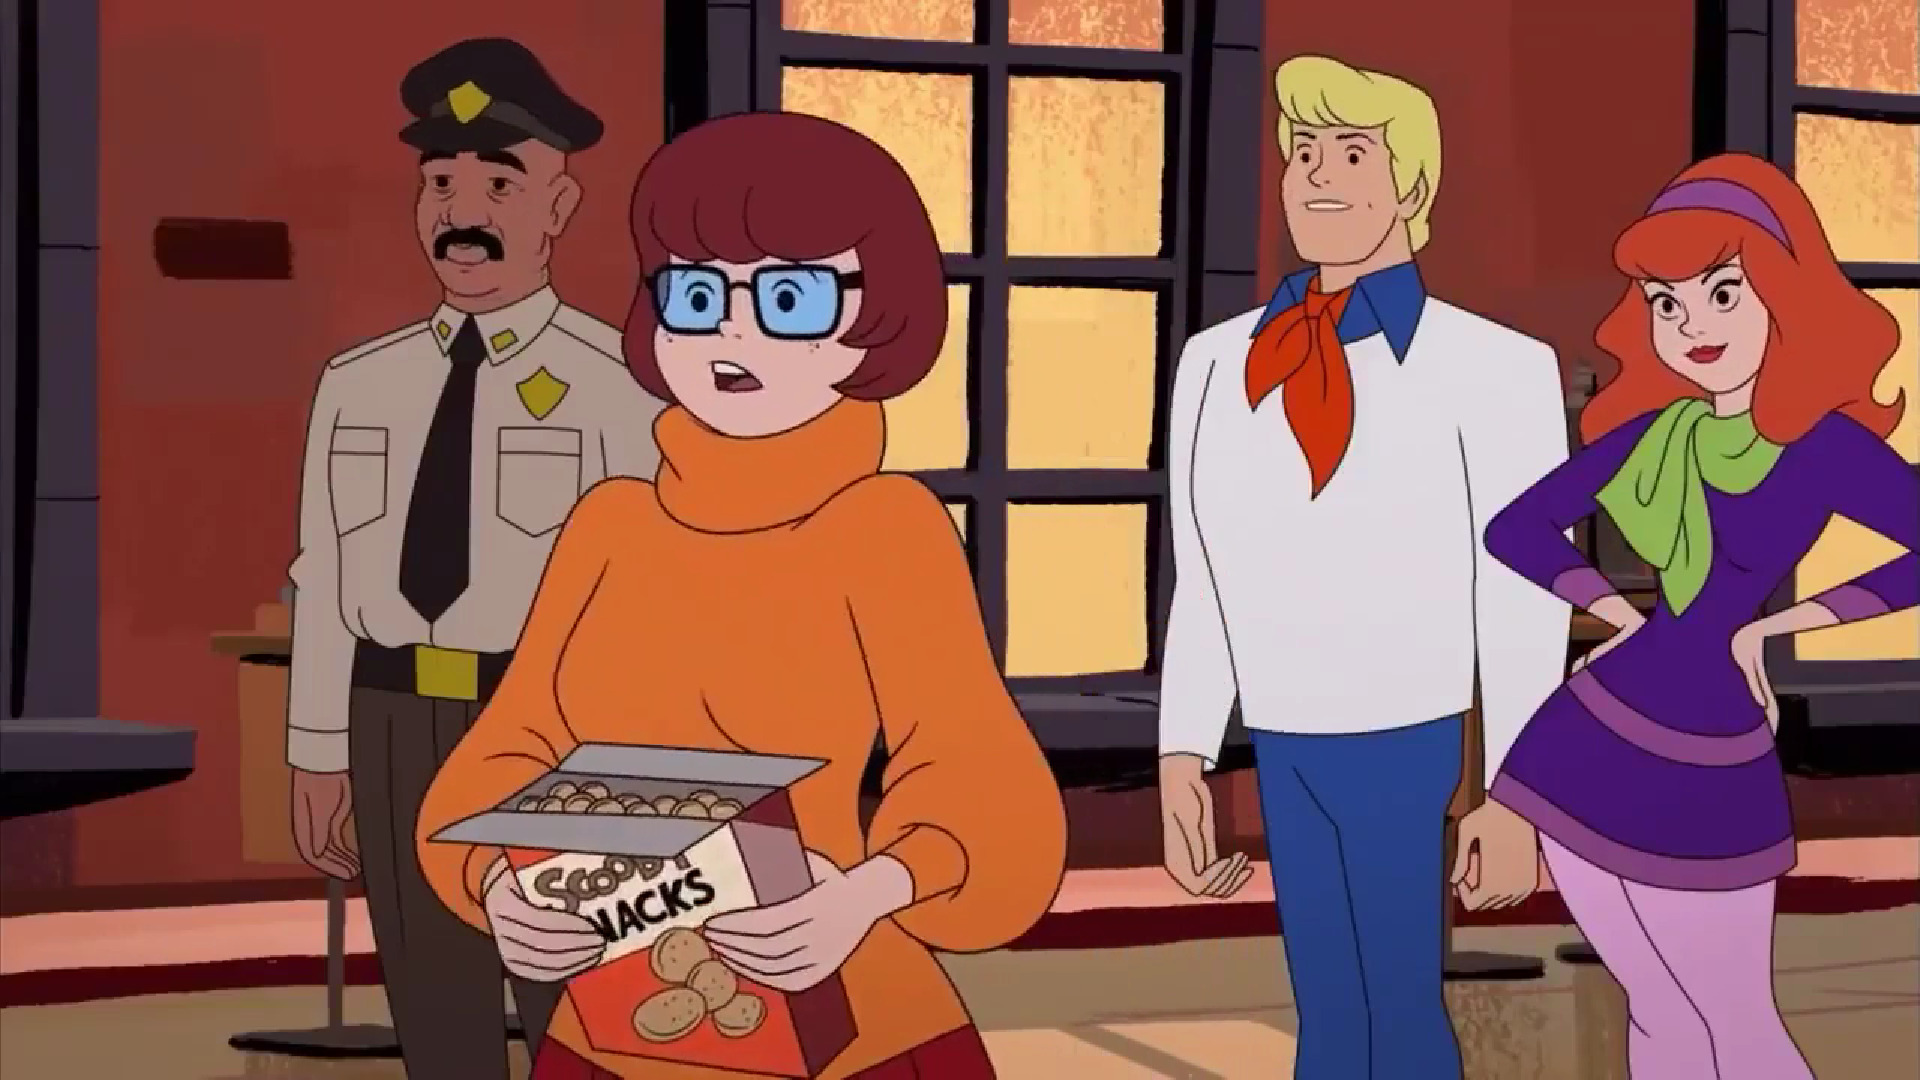 Vilma Dinkley Personaje De Scooby Doo Se Enamora De Coco Diablo Una